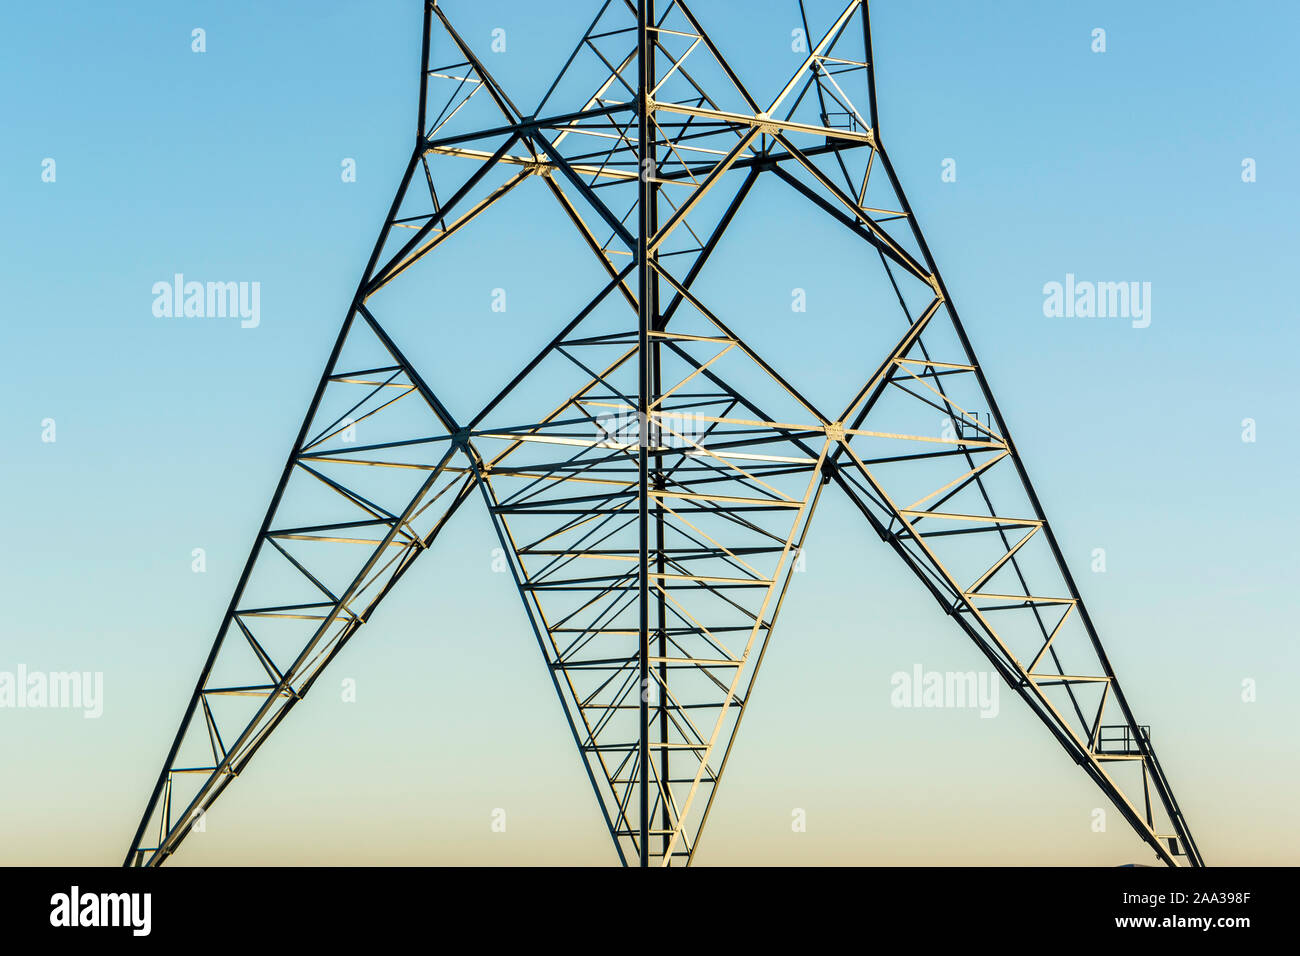 Strom mast, Strom pylon, abstraktes Konzept, den Transport von Windenergie, elektrischen Leitungen, der Hintergrund blau und orange sky, sonnige morni Stockfoto